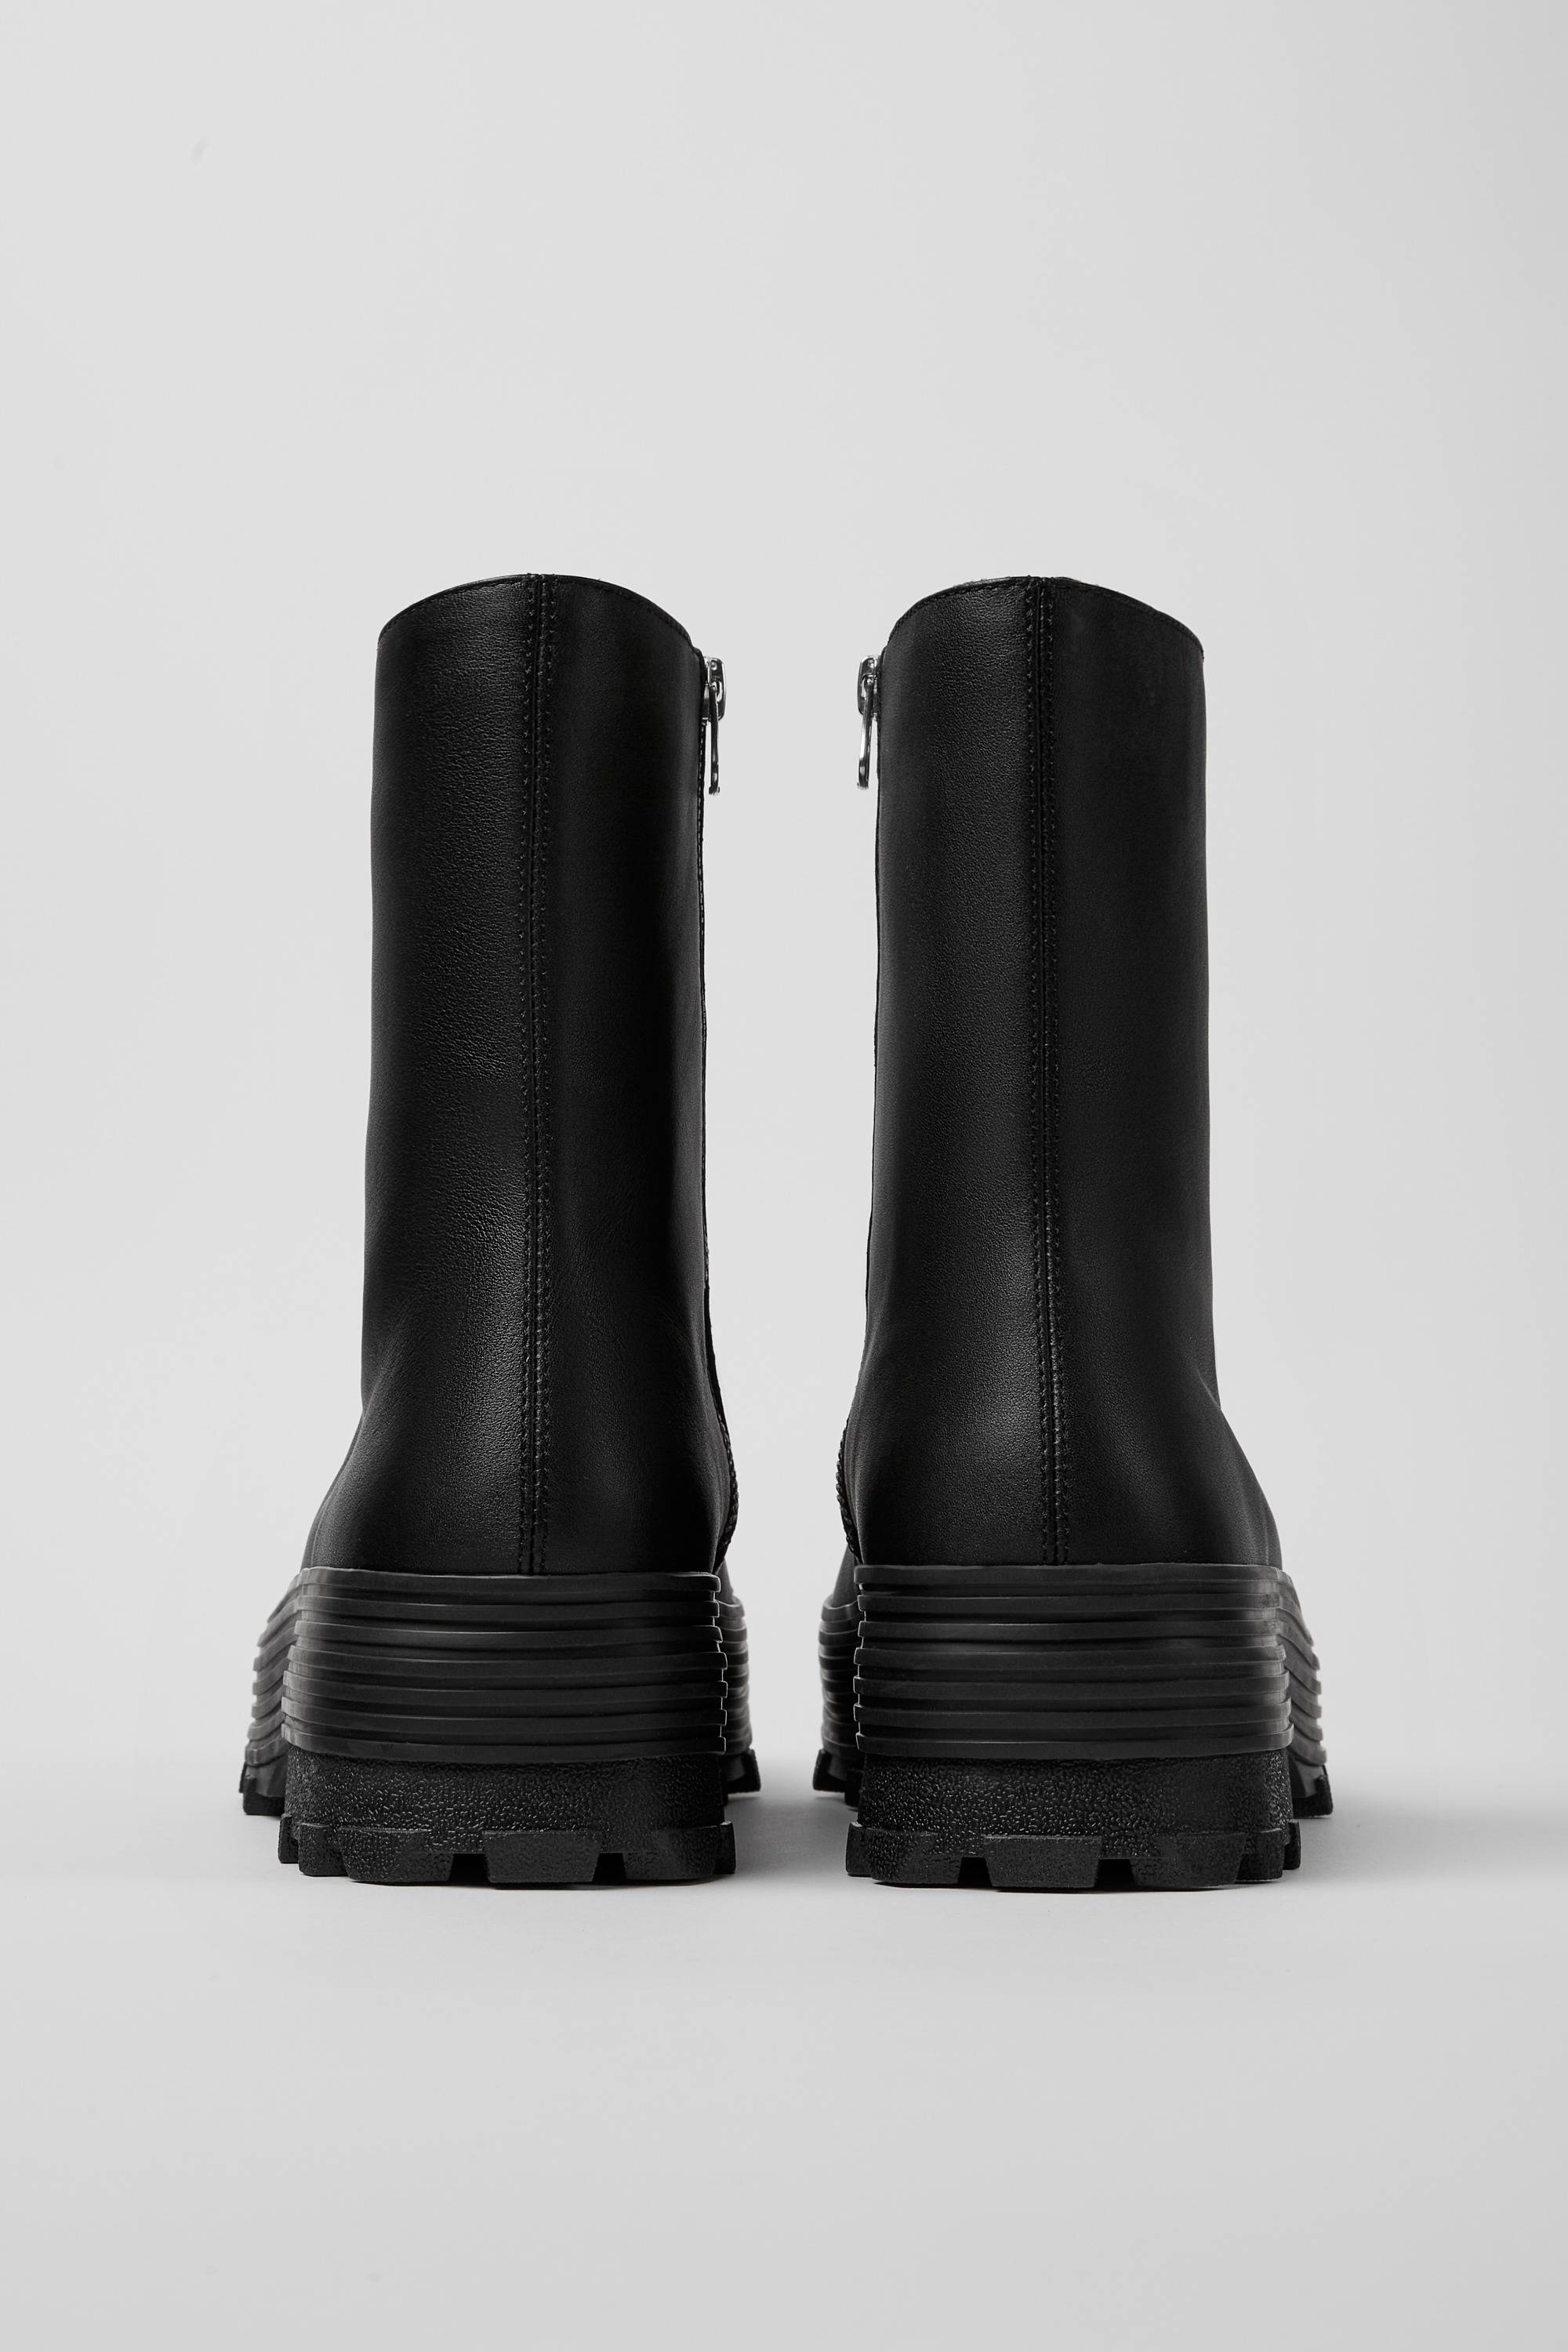 ジップアップブーツ新品 カンペールラボ レザー ブーツ トラクトリ 43 メンズ 27.5㎝ 黒